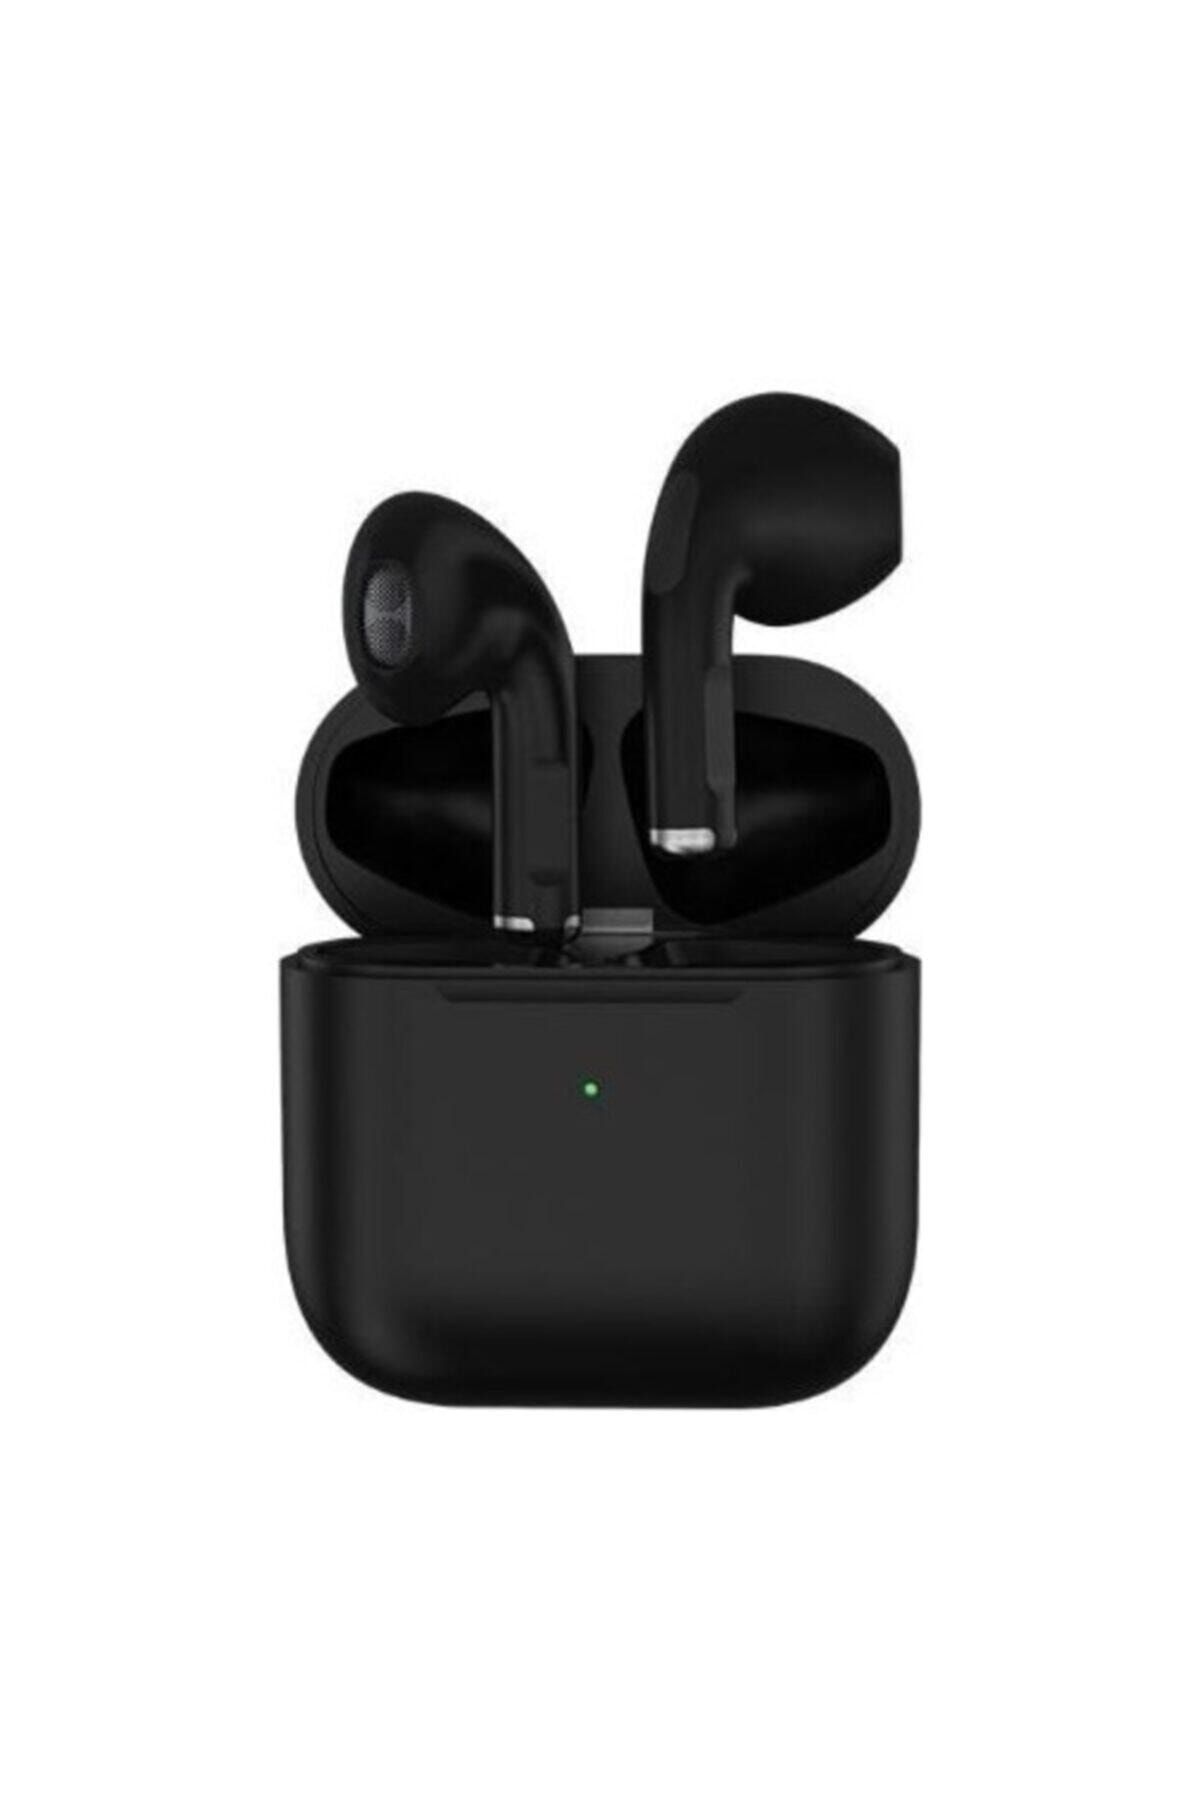 Polygold Pro 5 Uyumlu Yeni Nesil Eşsiz 8d Ses Kaliteli Kablosuz Kulakiçi Bluetooth Kulaklık